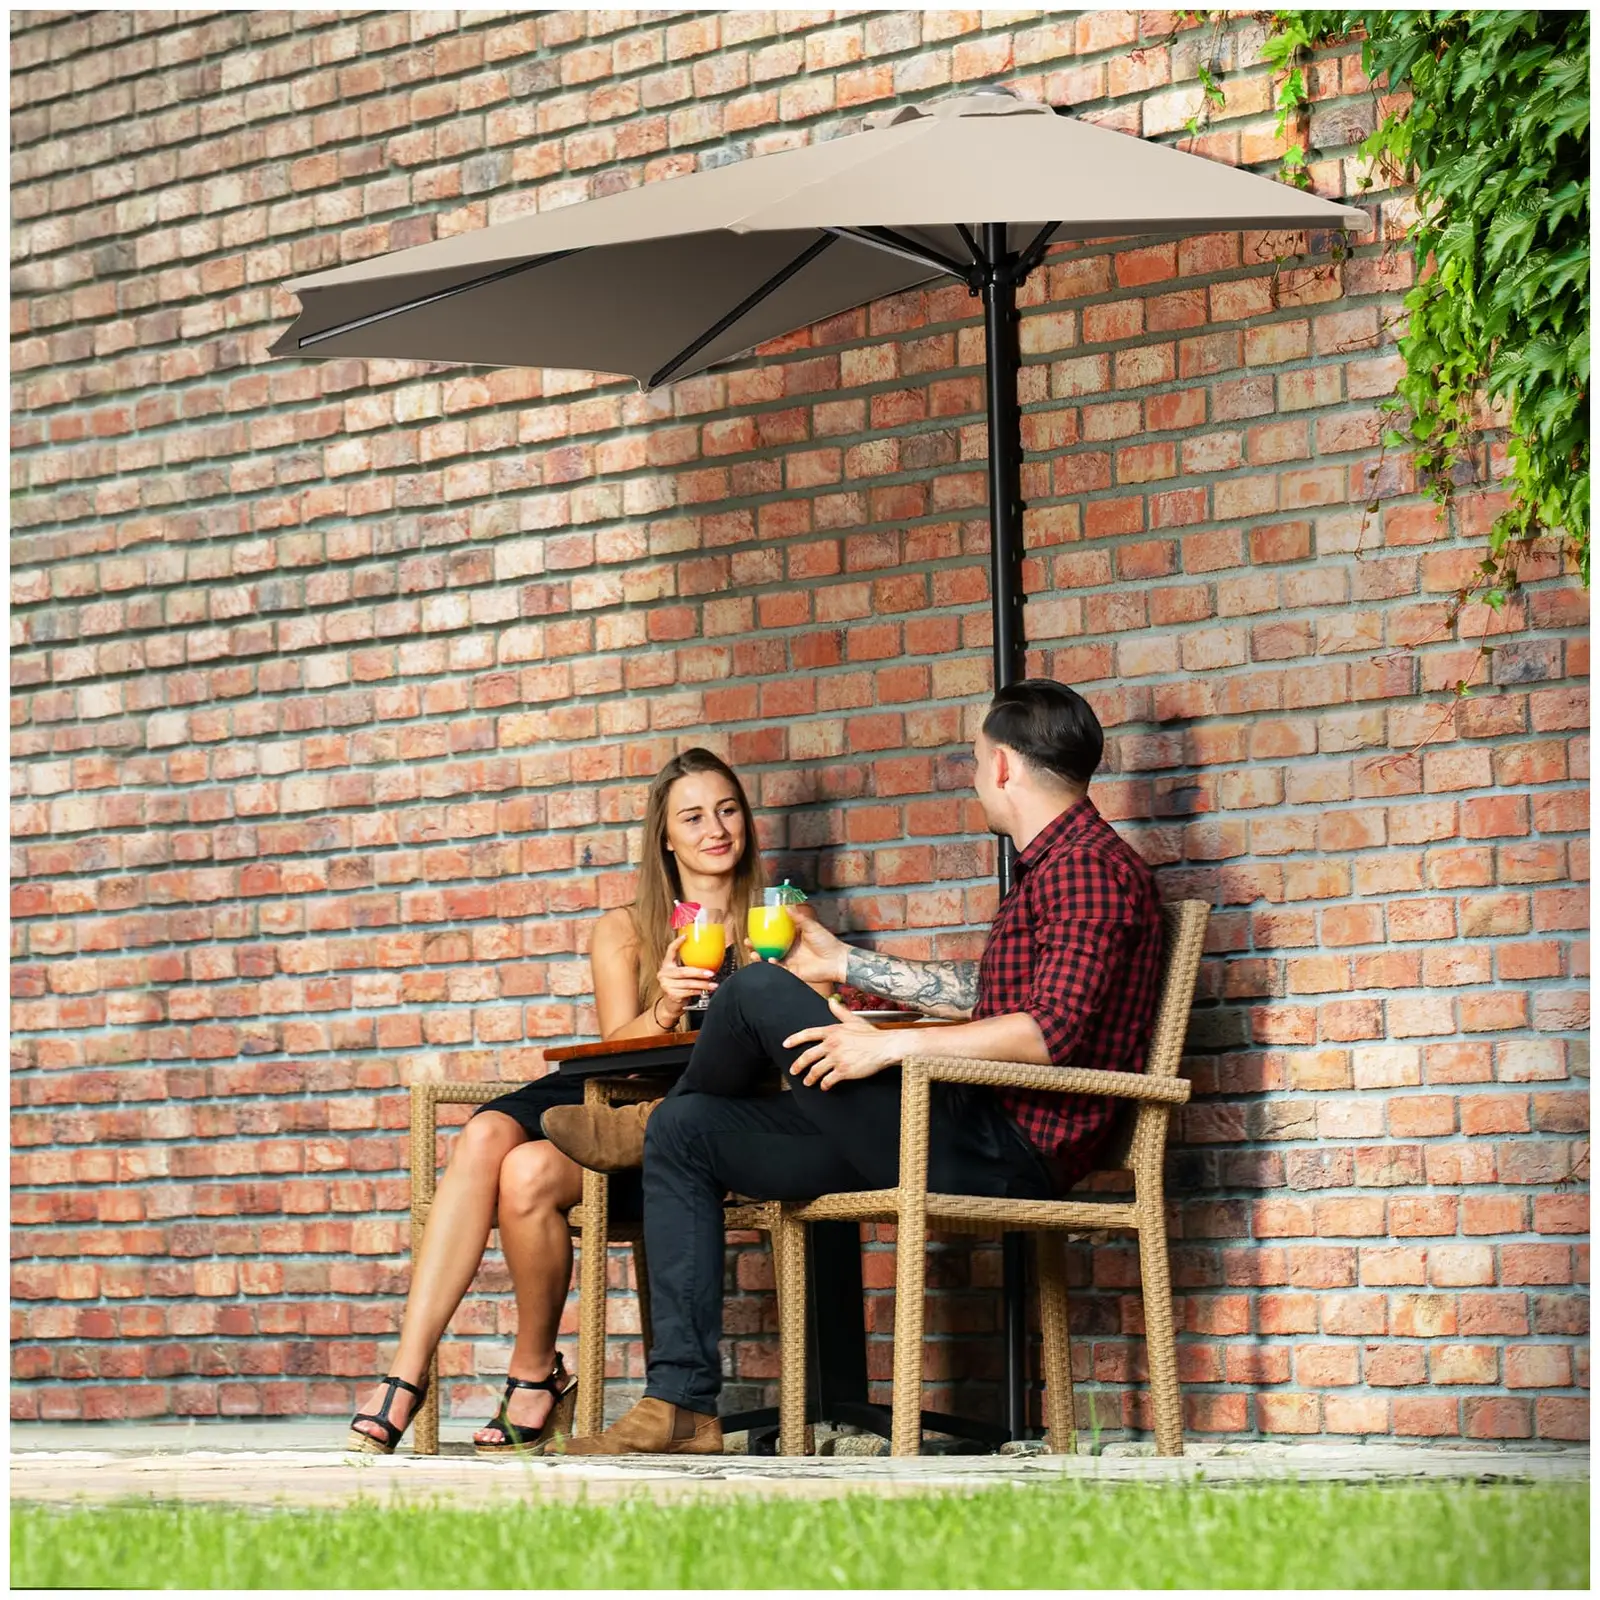 Brugt Halv parasol - flødefarvet - femkantet - 270 x 135 cm